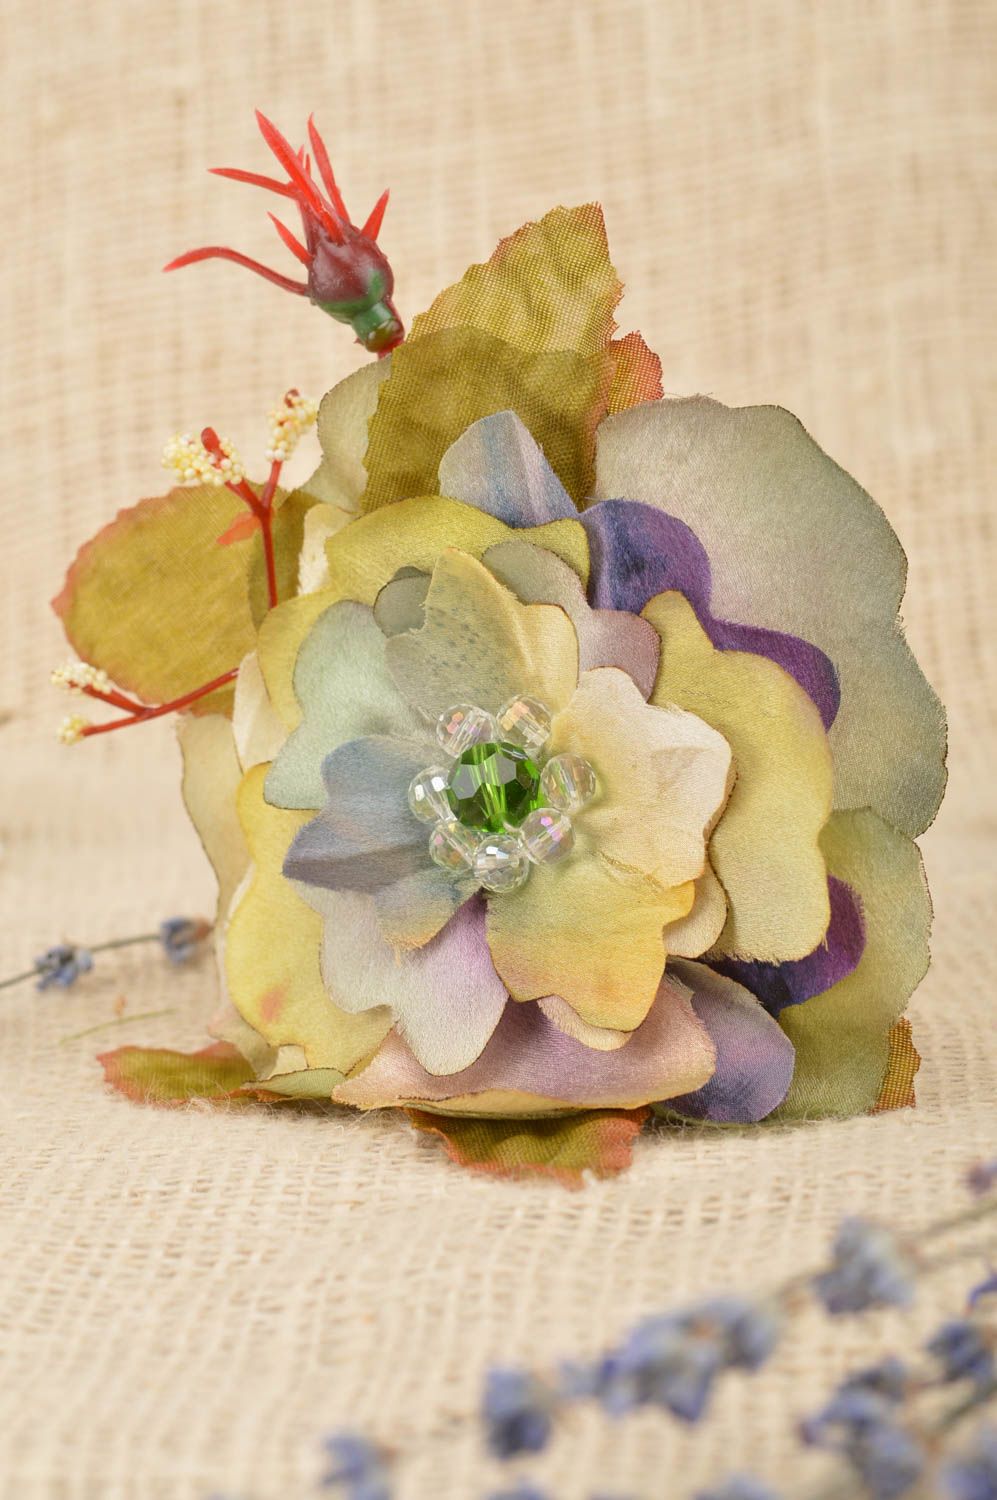 Брошь цветок из ткани небольшая необычной расцветки батик ручной работы фото 1